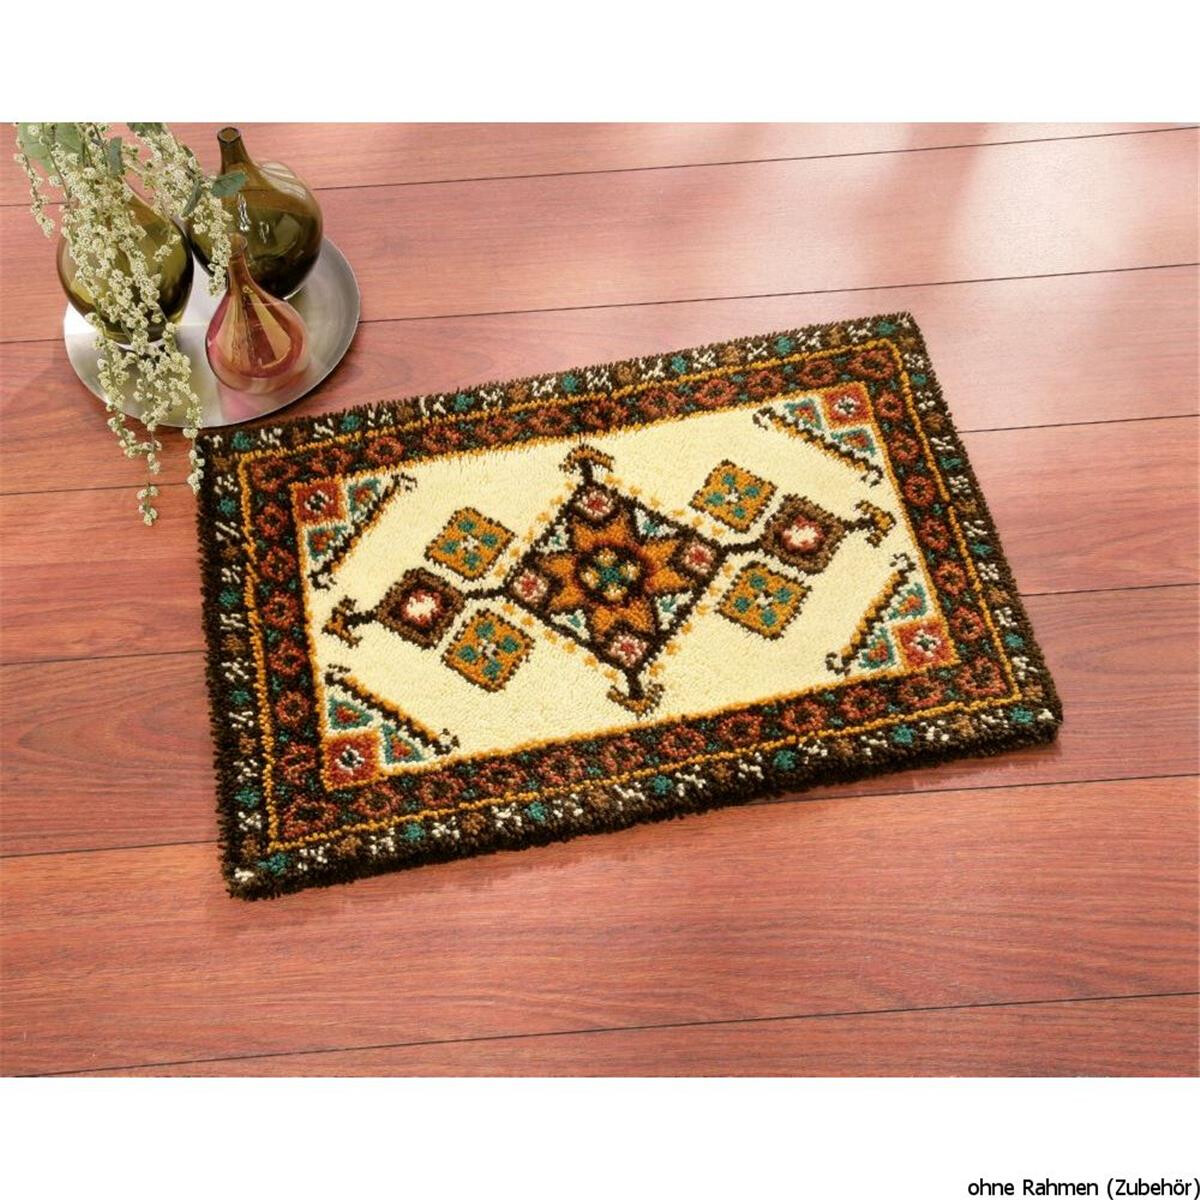 Vervaco Latch hook rug kit Inca geometry, DIY